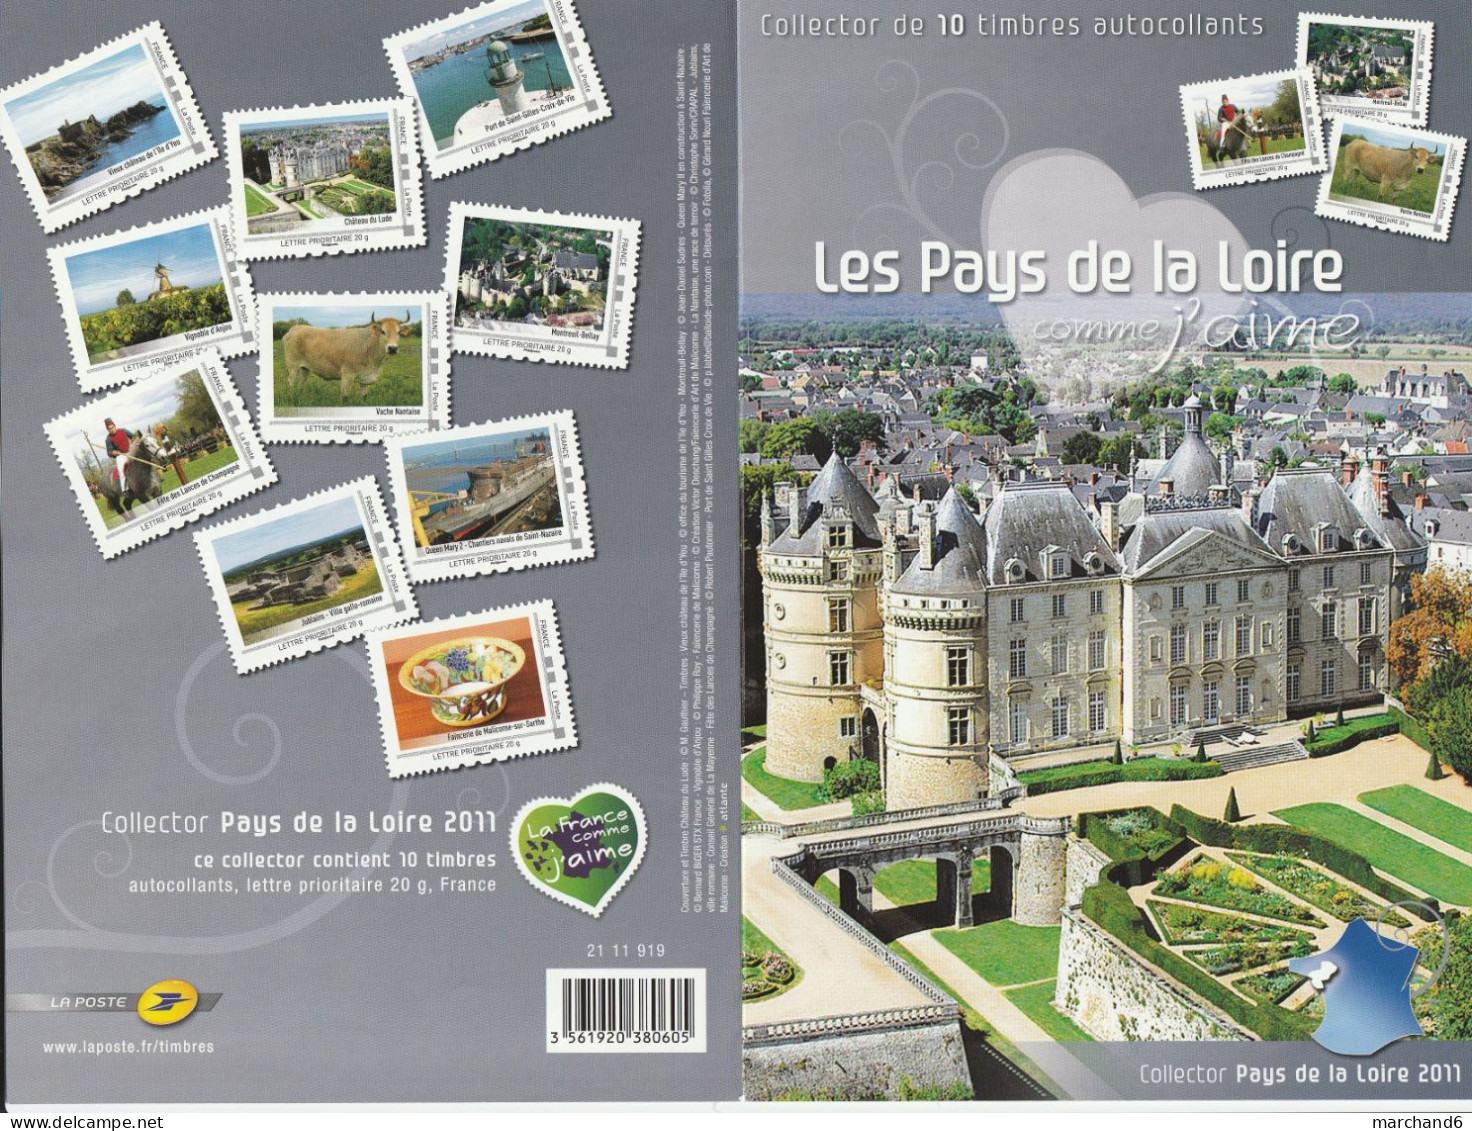 Feuillet Collector Pays De La Loire France Comme J Aime Série 3 France 2011 IDT L P 20gr 10 Timbres Autoadhésifs N°106 - Collectors